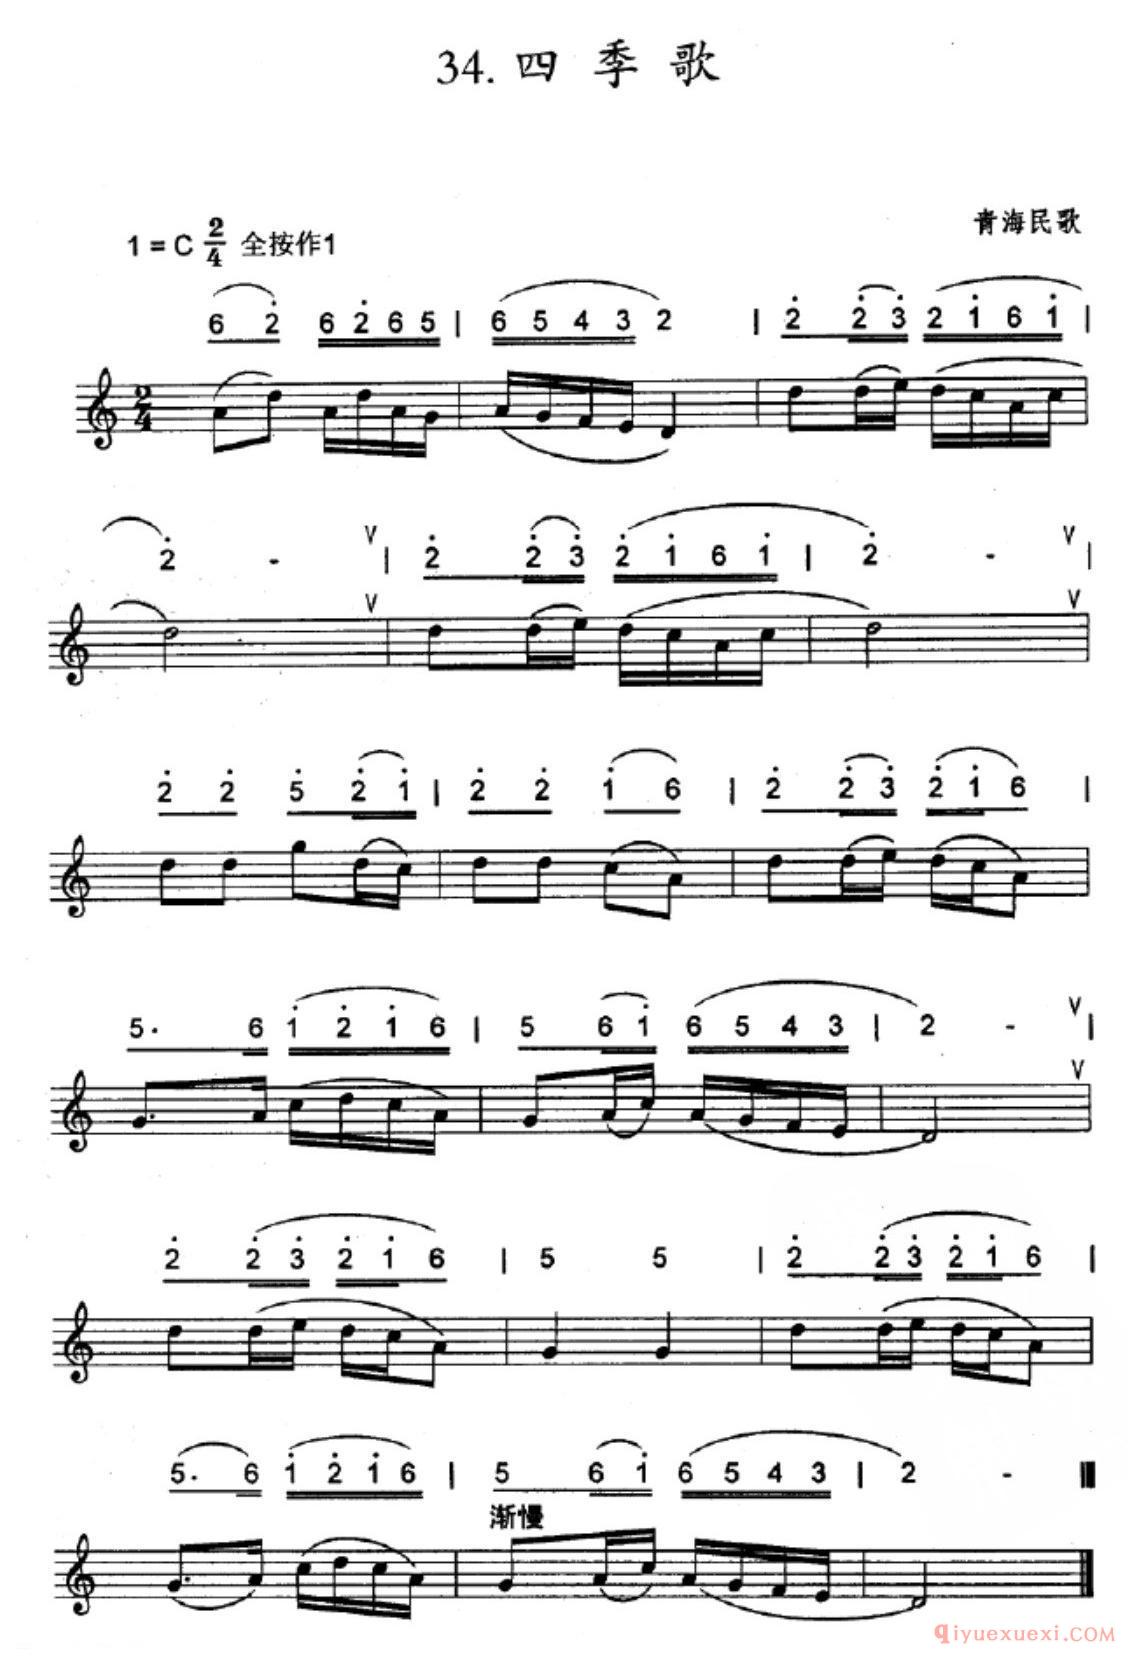 竖笛连音练习曲_四季歌_五线谱与简谱对照